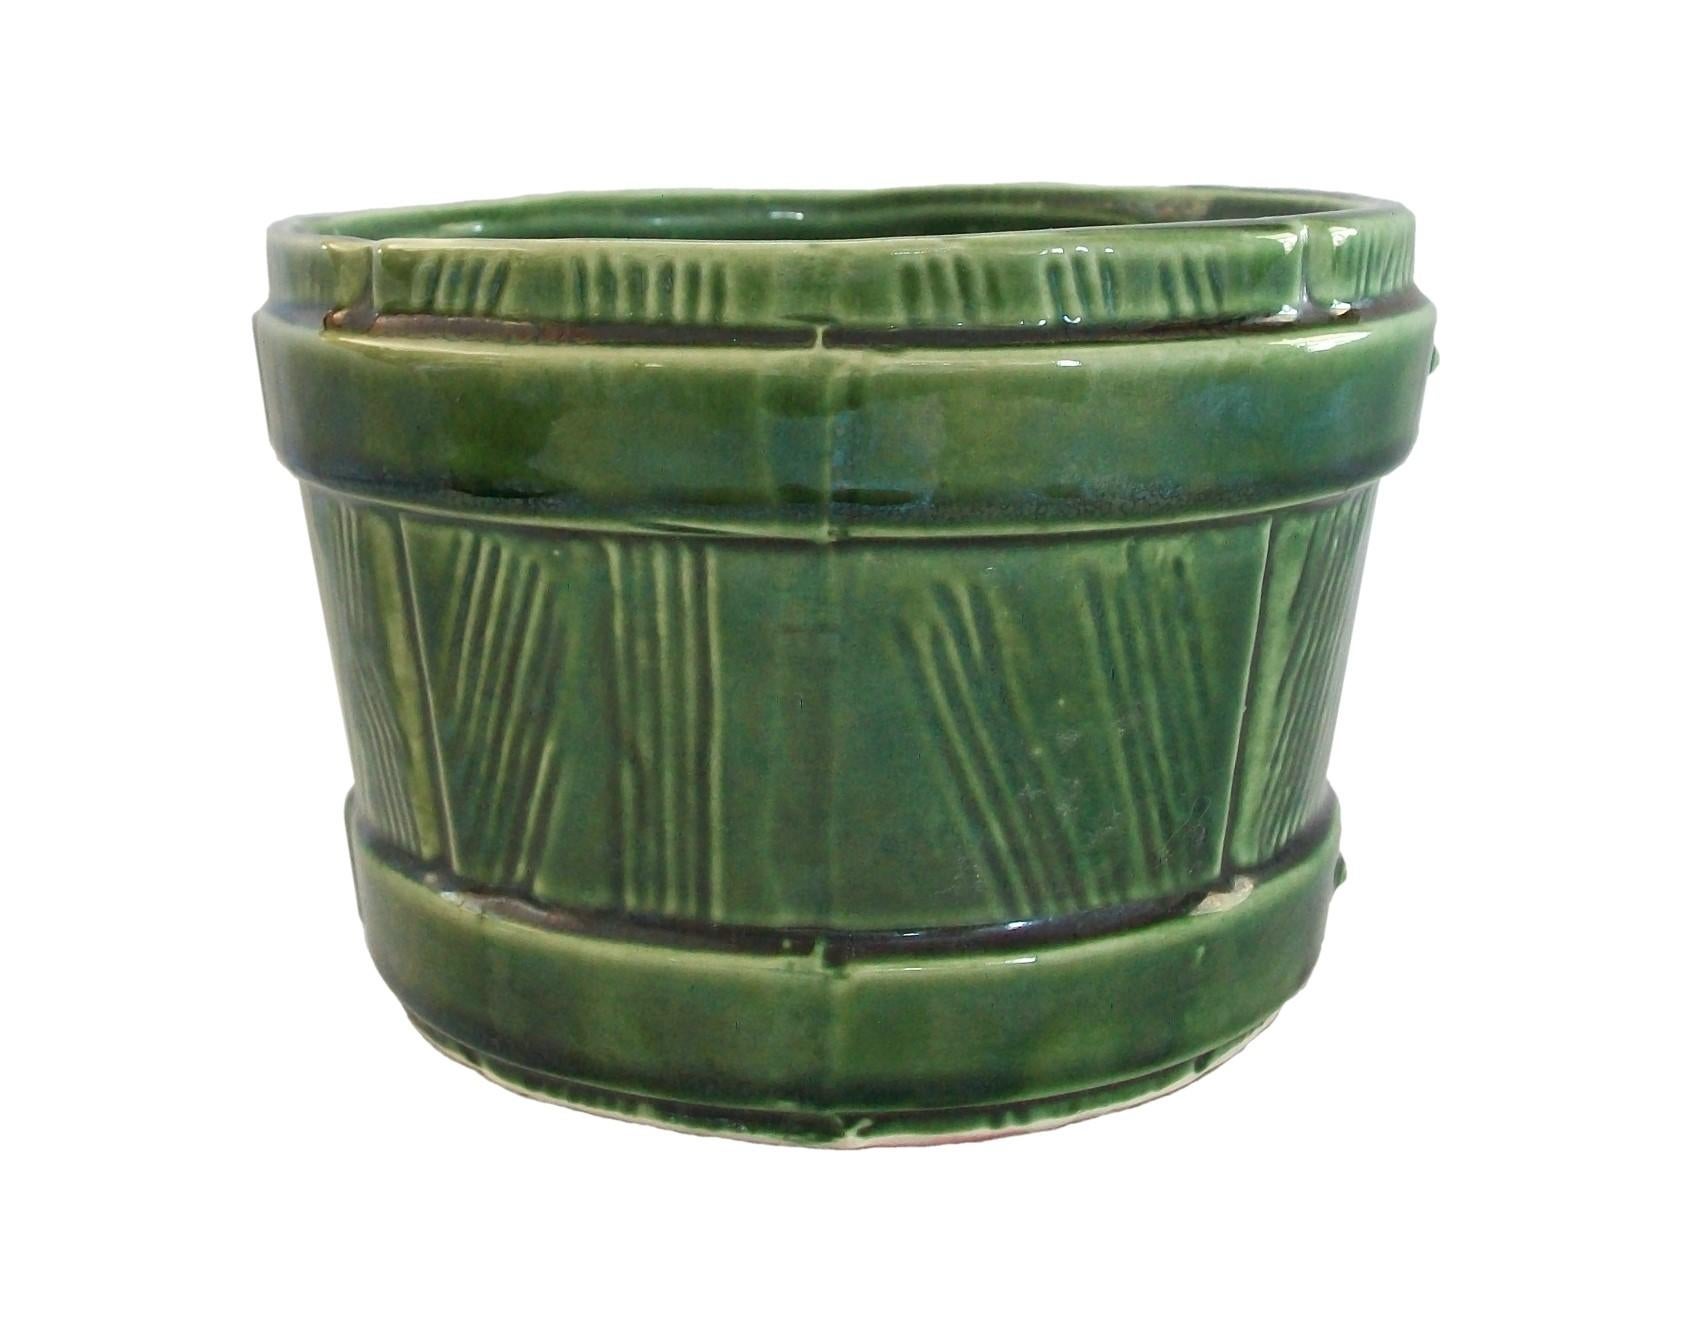 UNGEMACH POTTERY COMPANY (UPCO) - Vintage Keramik 'faux bois' Pflanzgefäß - geformte Dekoration - durchgehend grüne Glasur - signiert auf dem Sockel - Vereinigte Staaten - um 1950.

Ausgezeichneter Vintage-Zustand - kein Verlust - keine Beschädigung